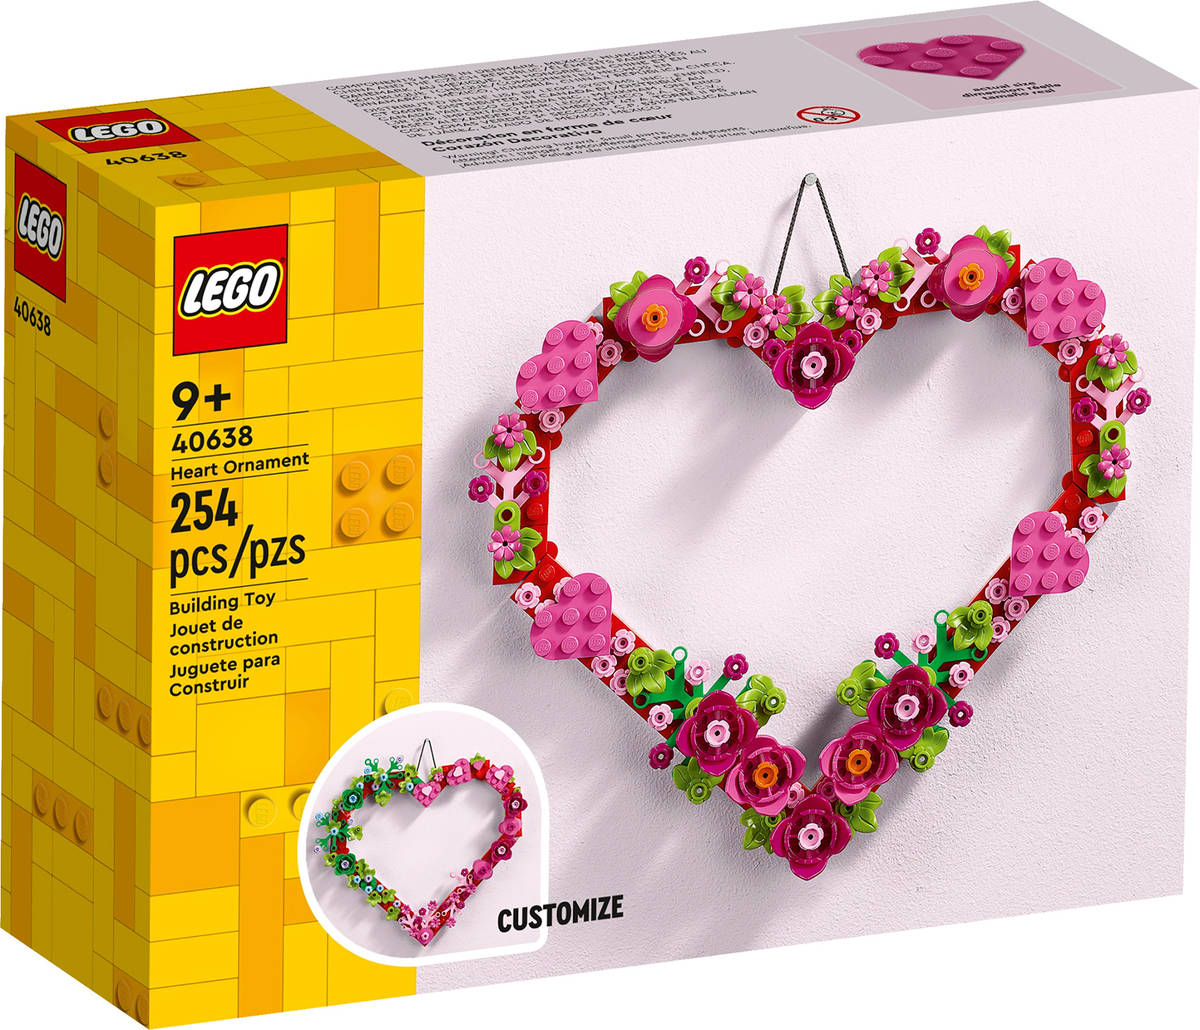 LEGO CREATOR Ozdoba ve tvaru srdce 40638 STAVEBNICE - zvìtšit obrázek